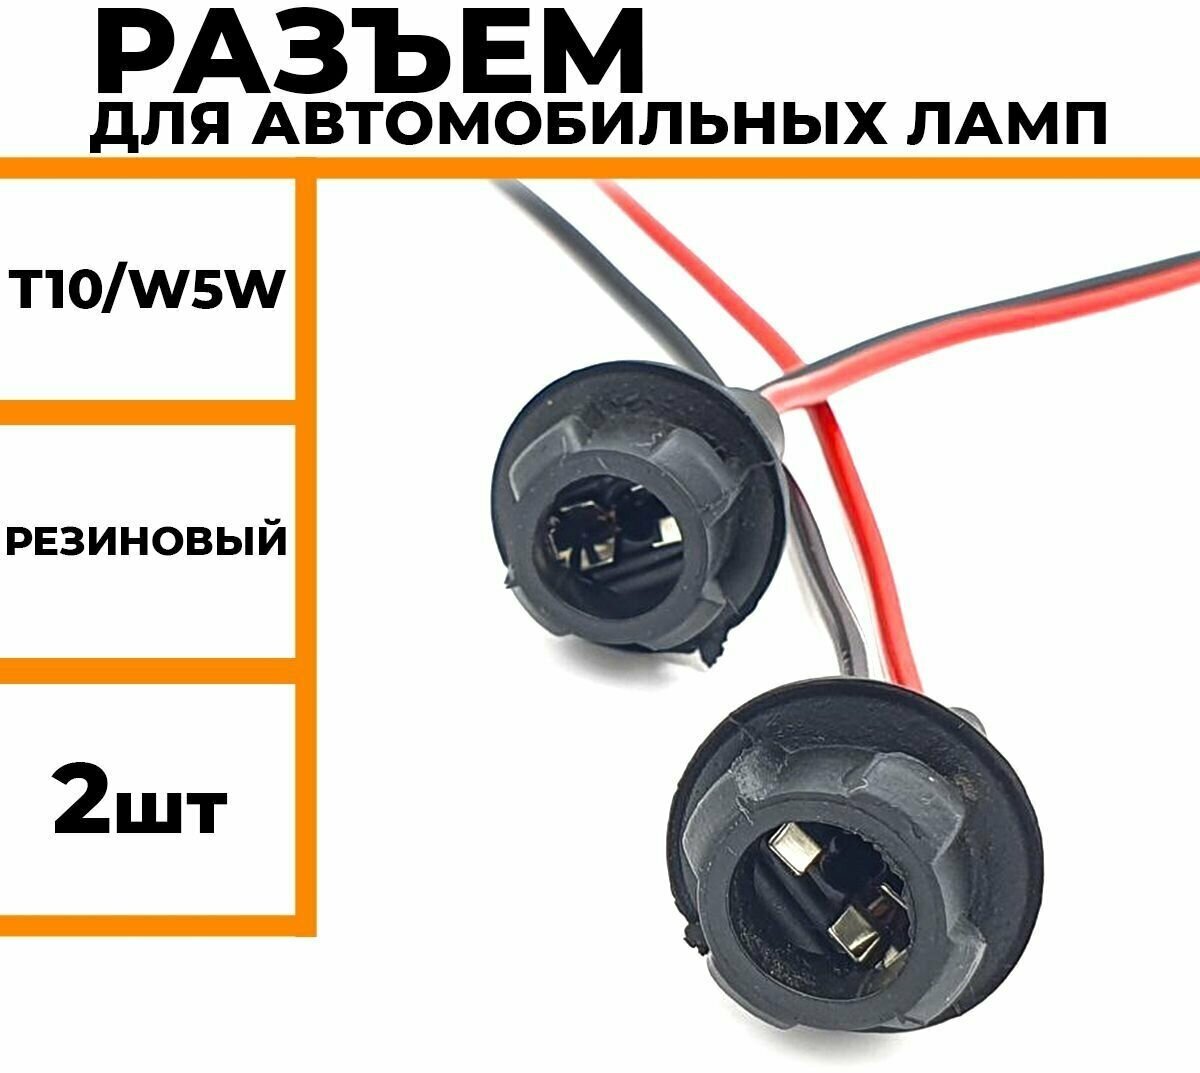 Разъем для автомобильных ламп с цоколем T10 W5W универсальный резиновый патрон для подключения автомобильных ламп 2 шт